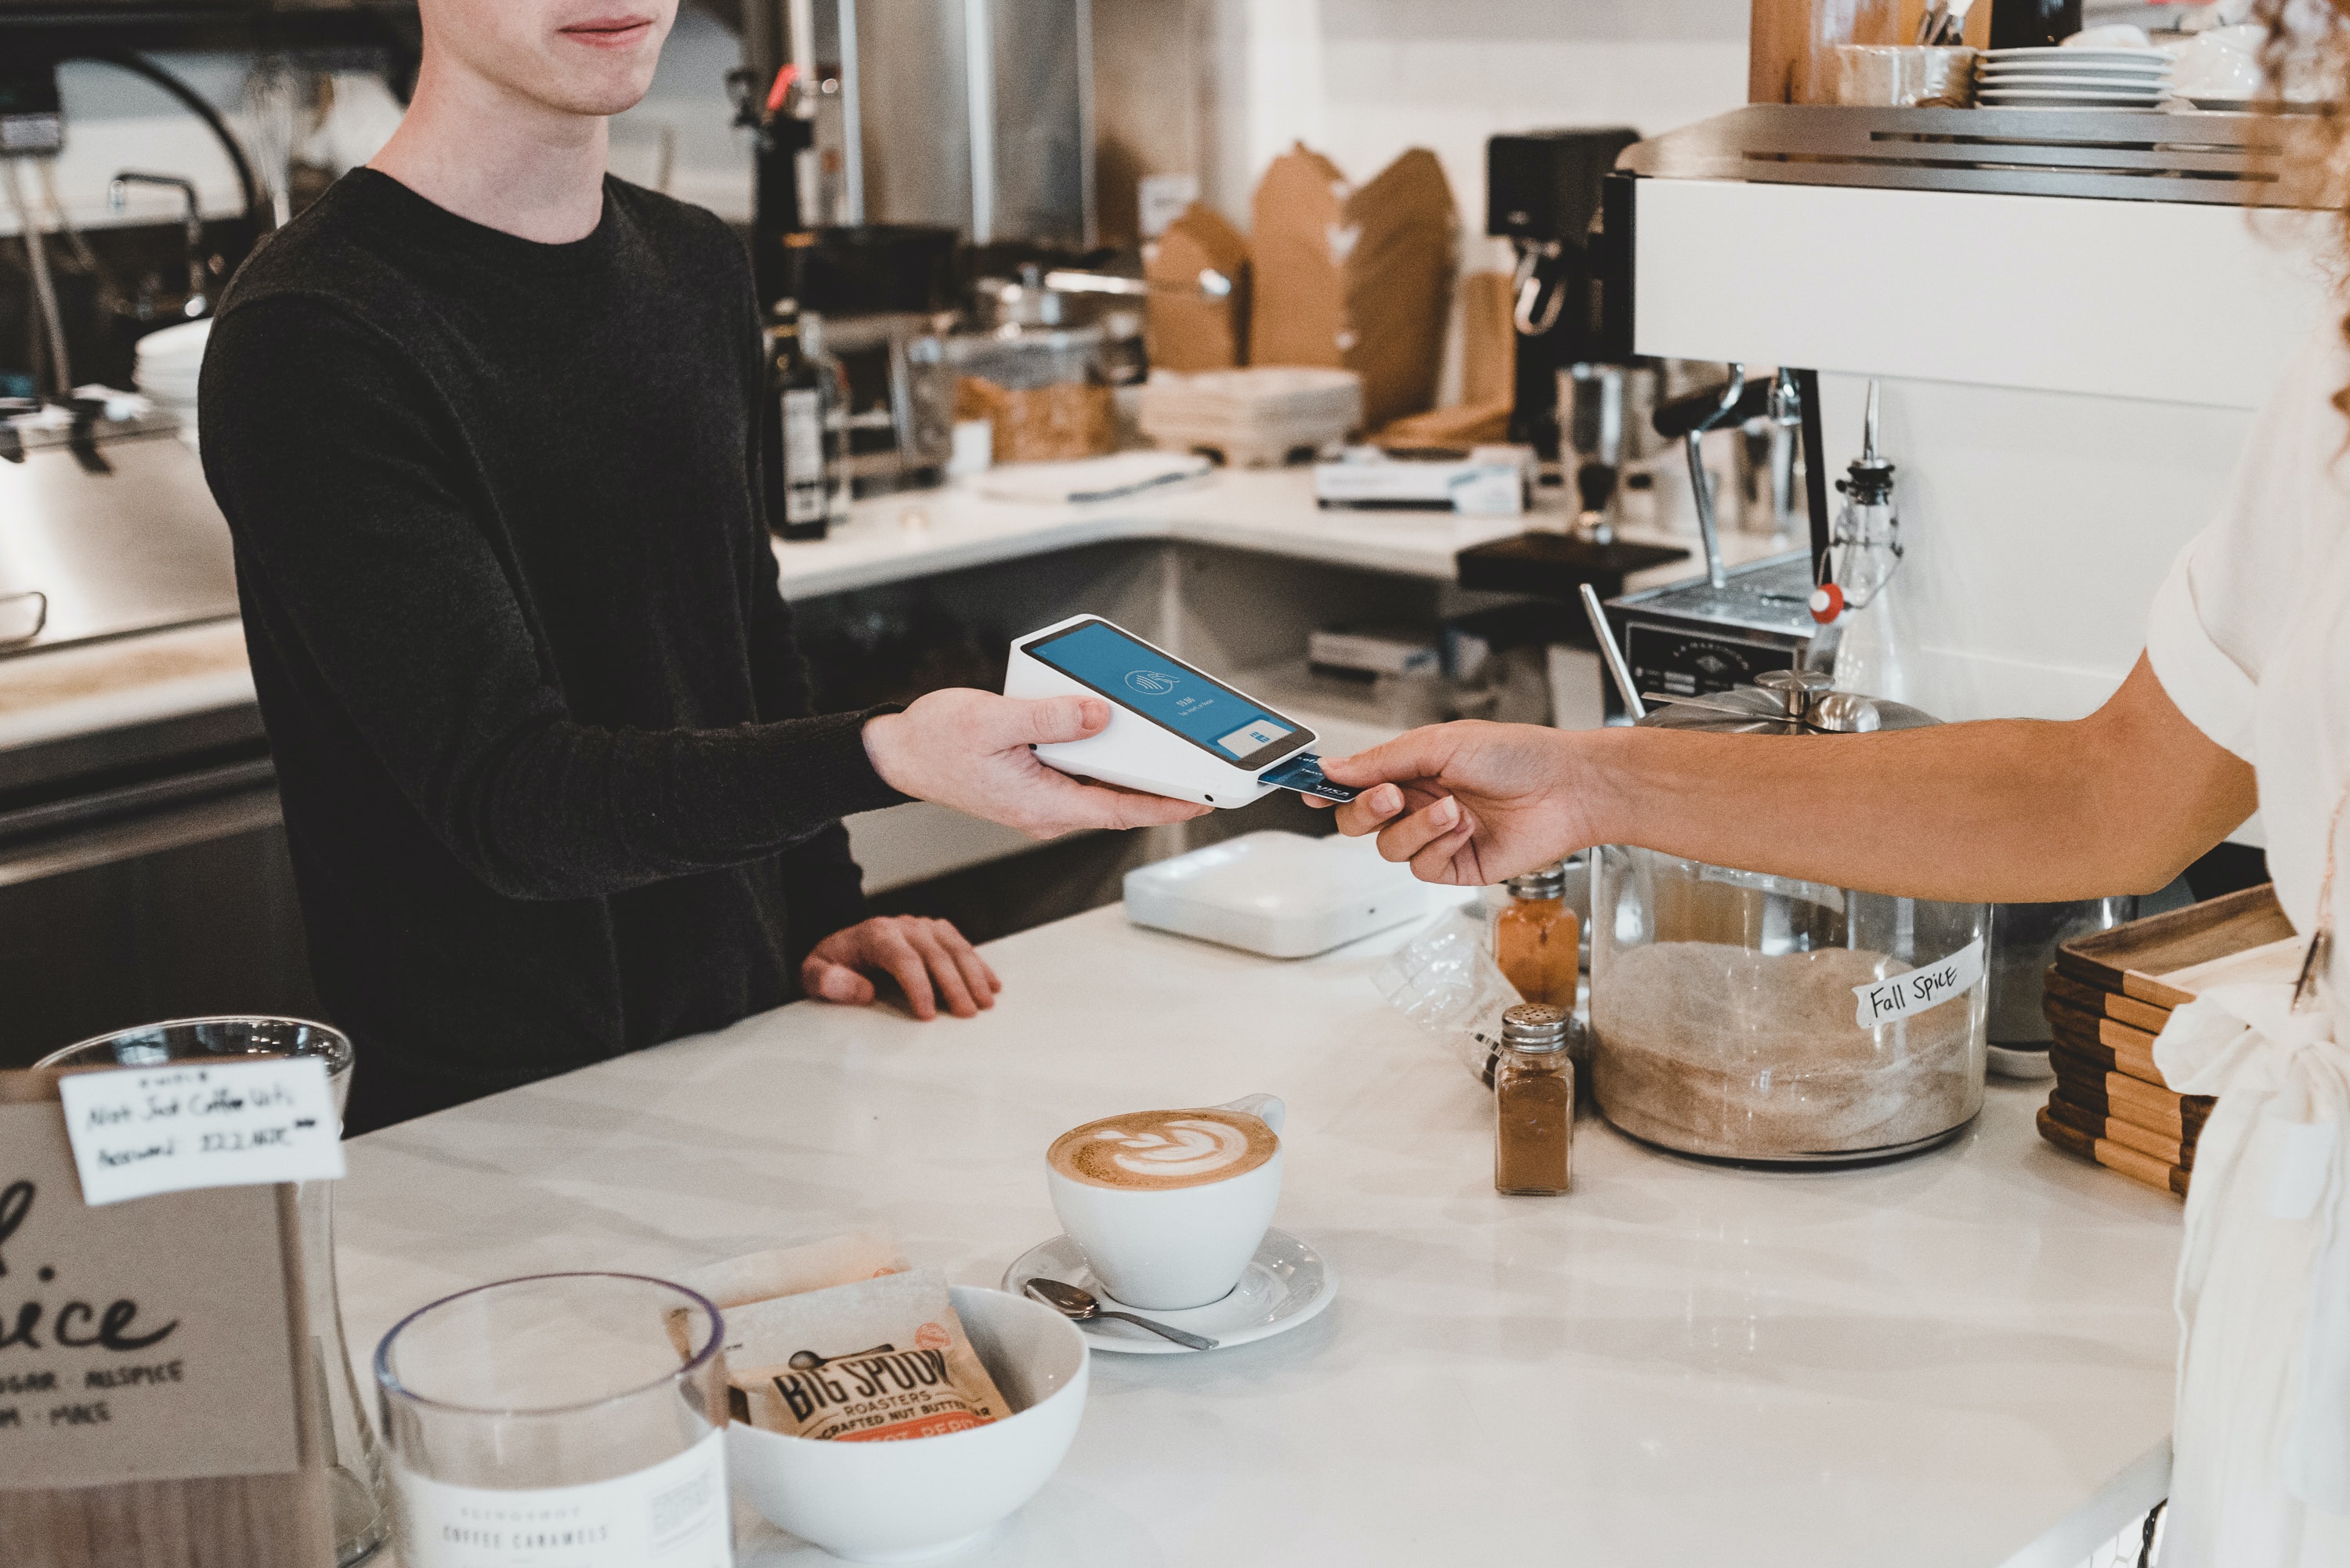 Restaurant Payments feature Eat App